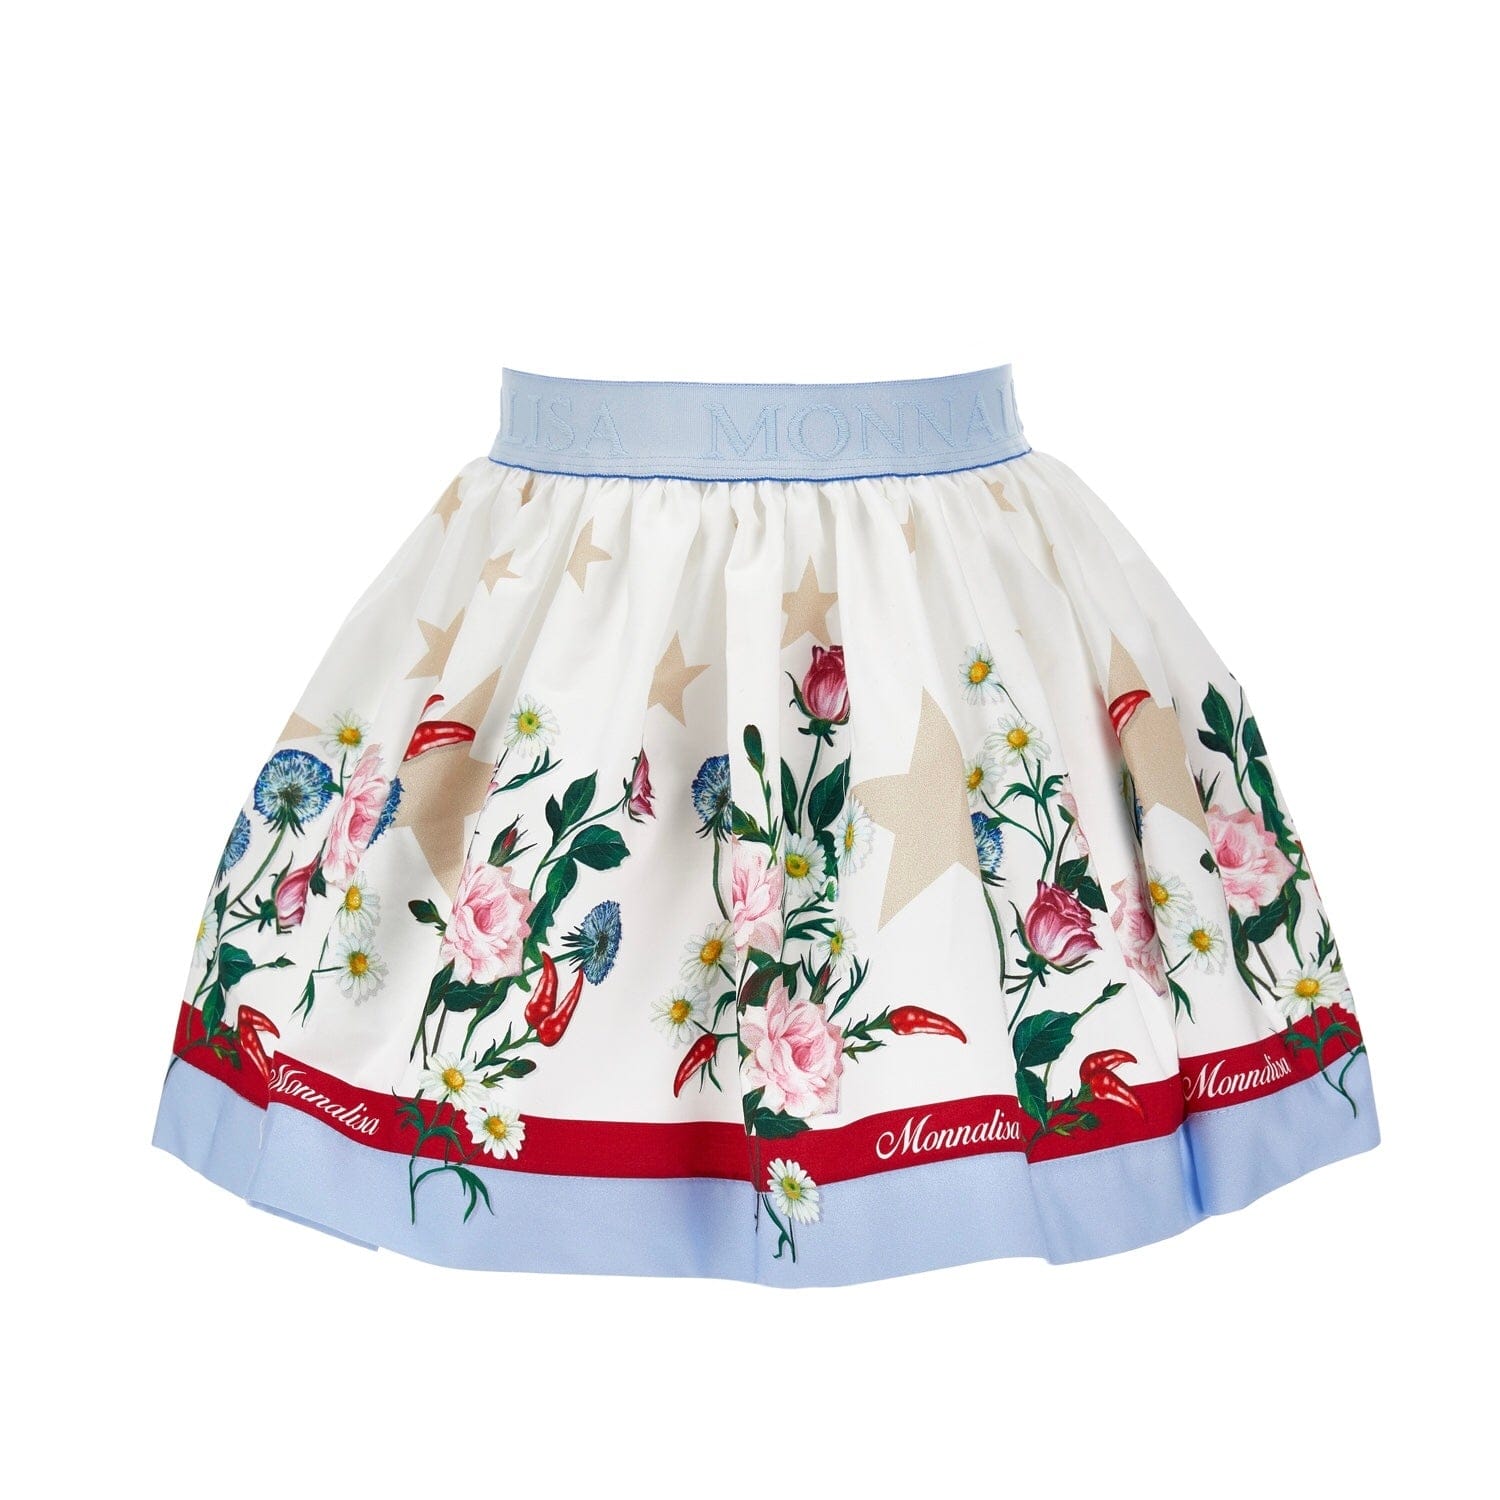 MONNALISA - Minnie Skirt Set - White